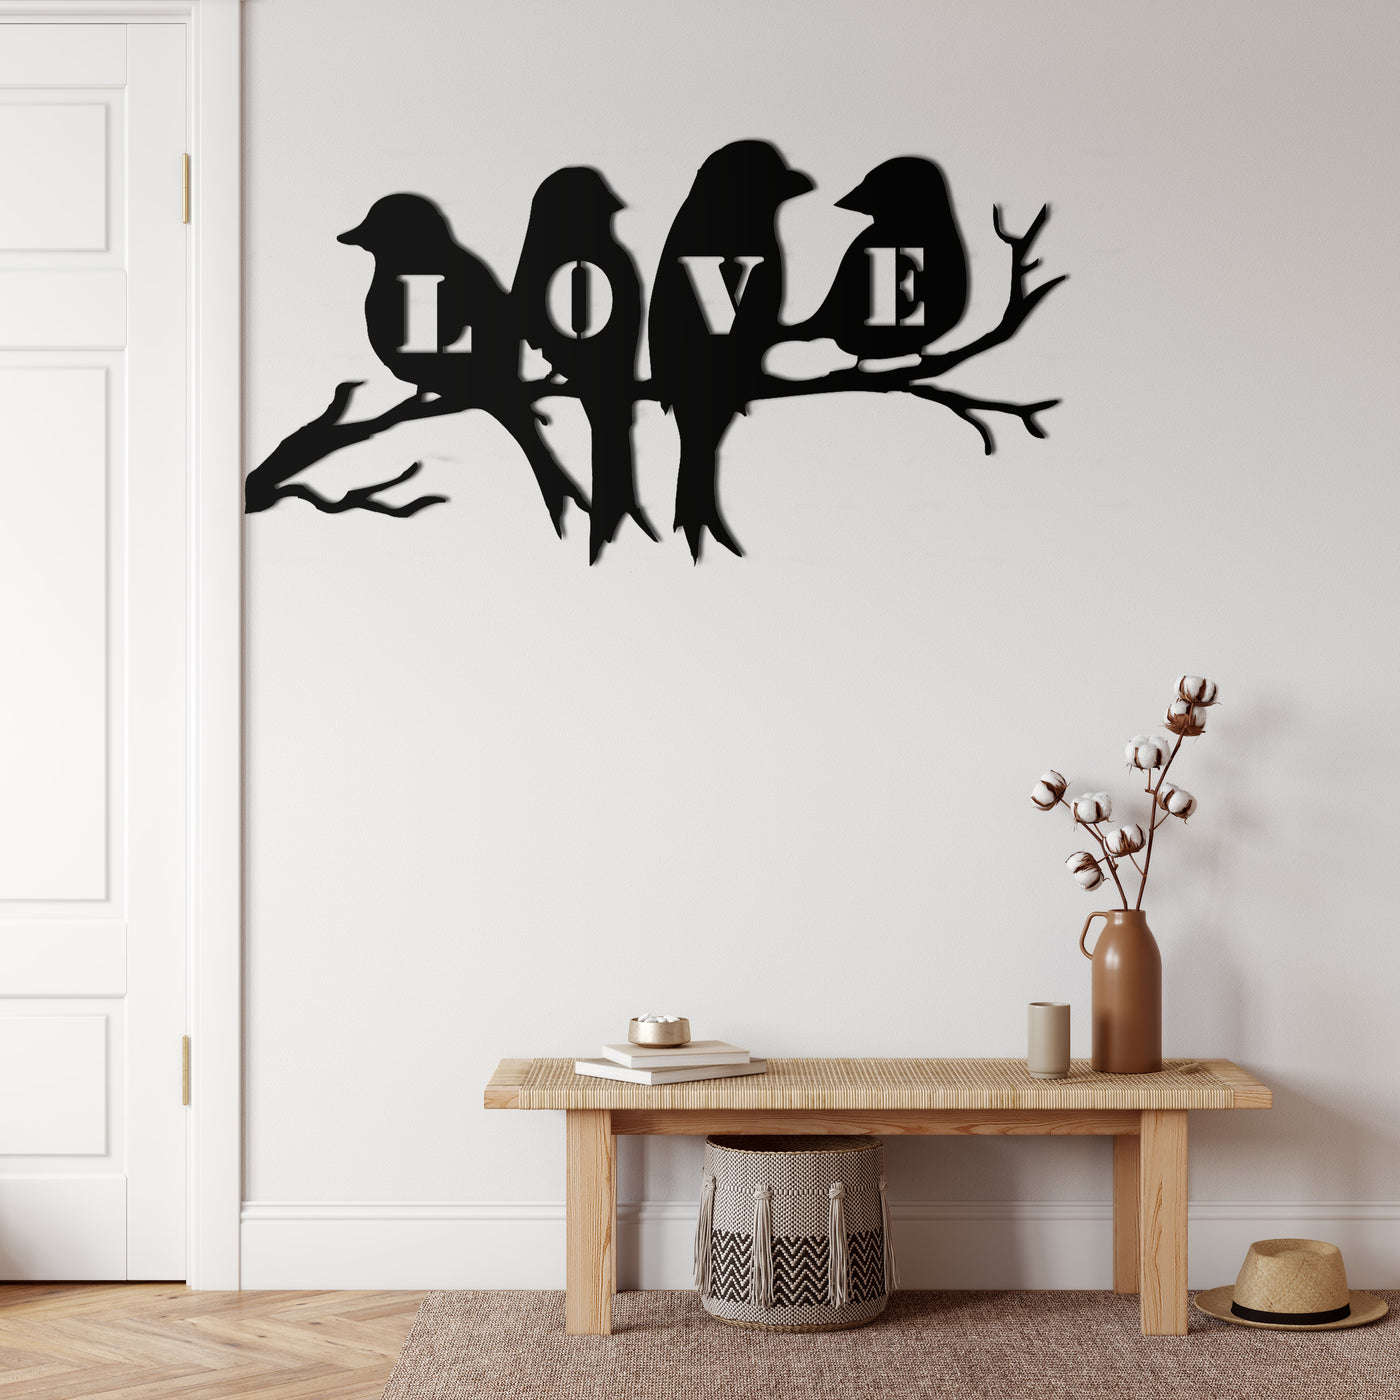 Arte de Pared de Metal "Birds on Branch" (Pájaros en una Rama)